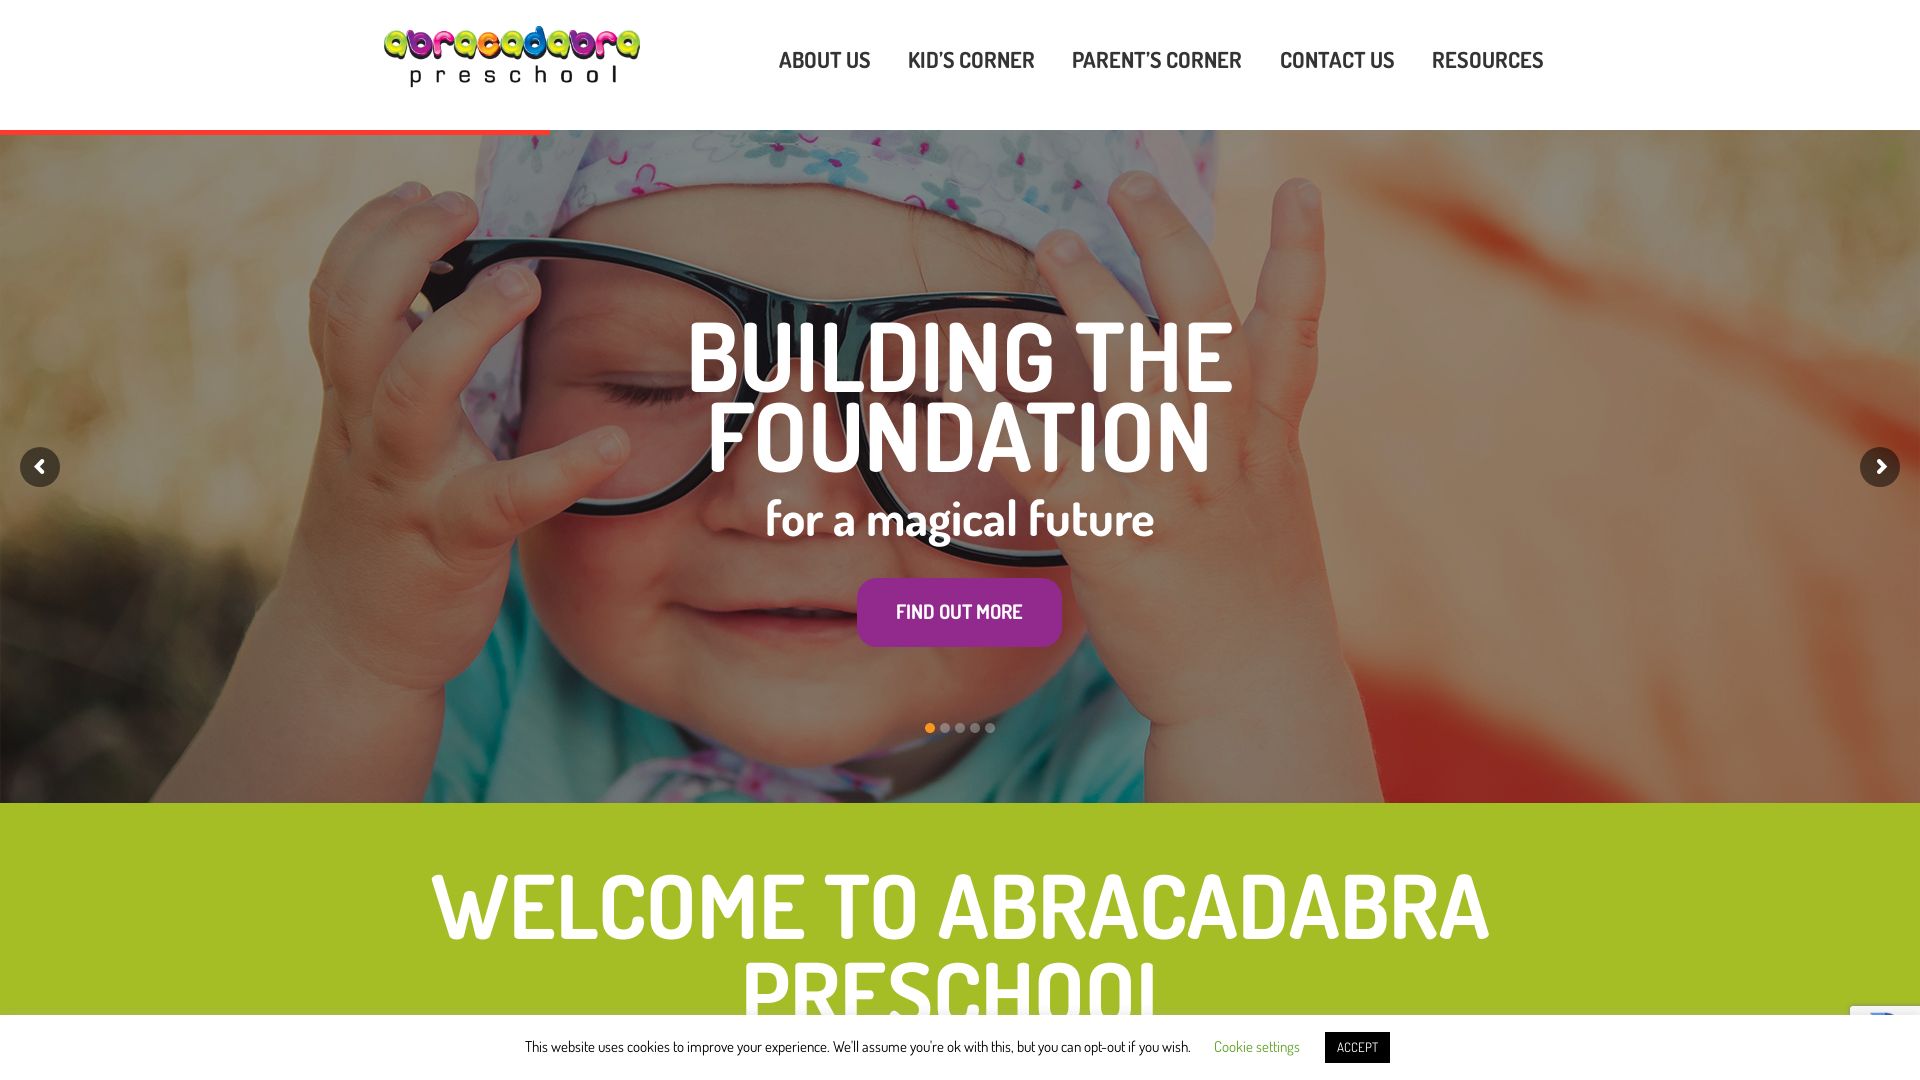 Webseitenstatus abracadabrapreschool.co.uk ist   ONLINE